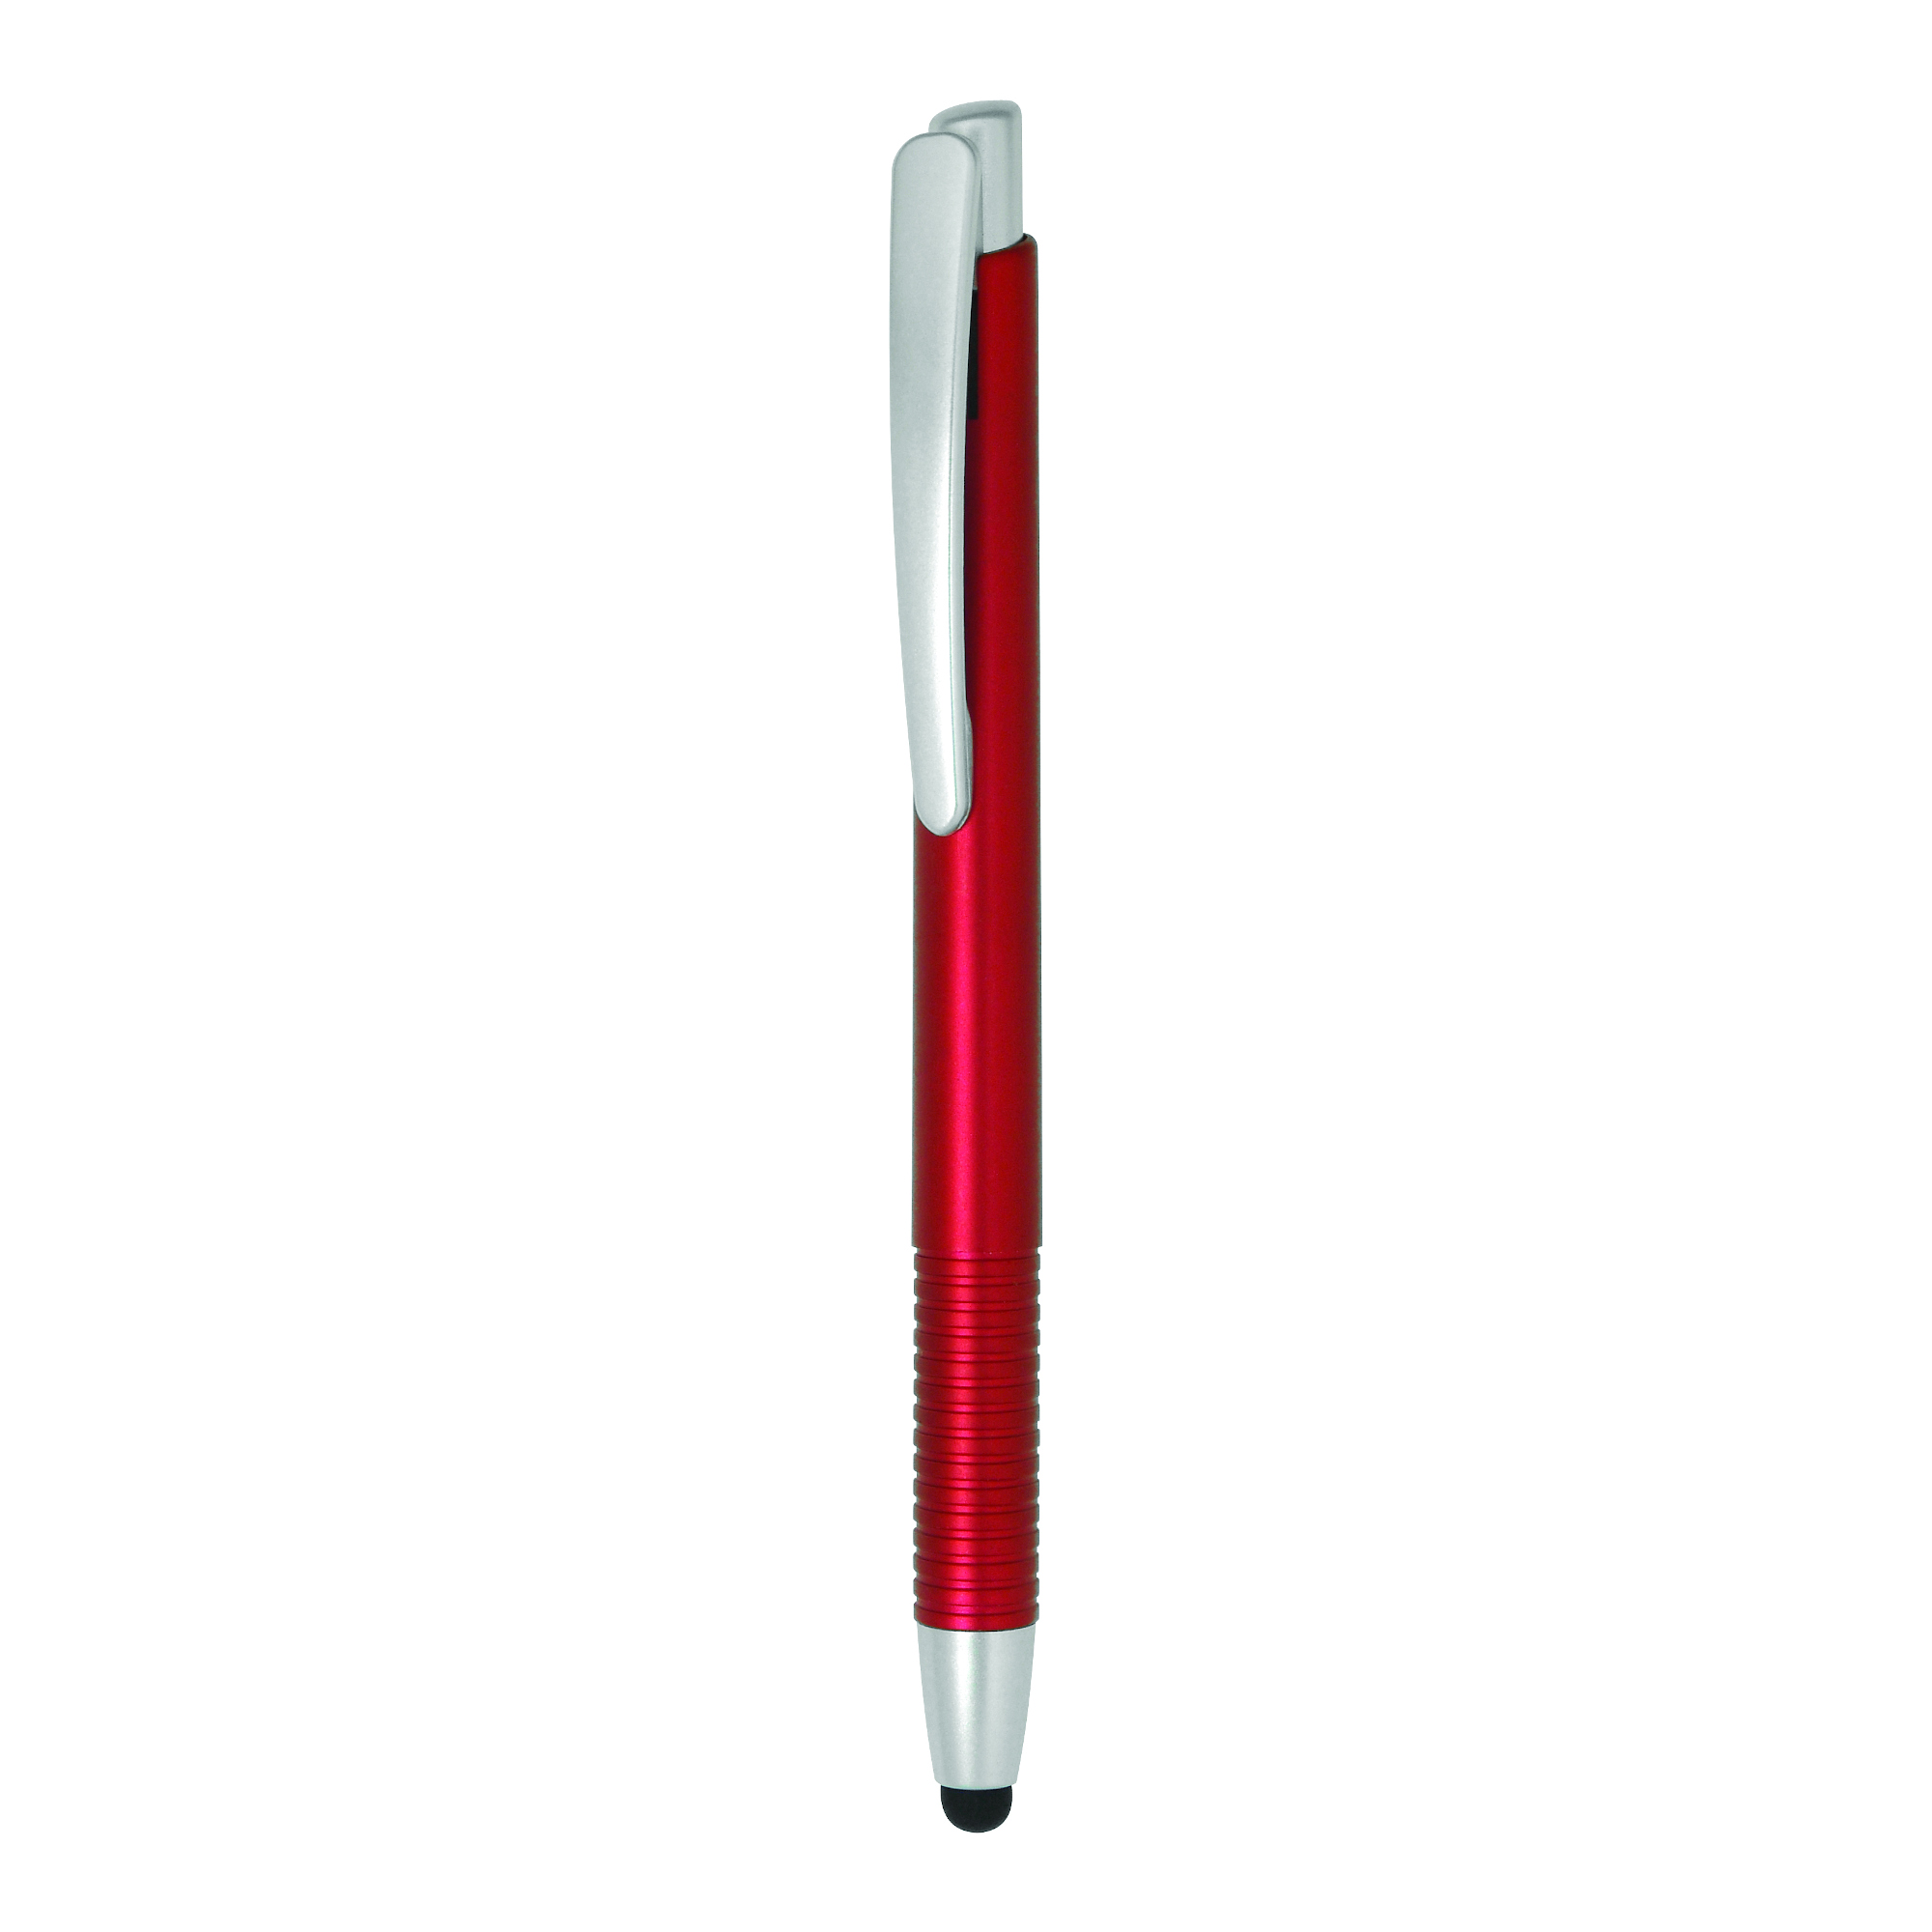 Bolígrafo con puntero Verso Stylus
Color rojo y plateado